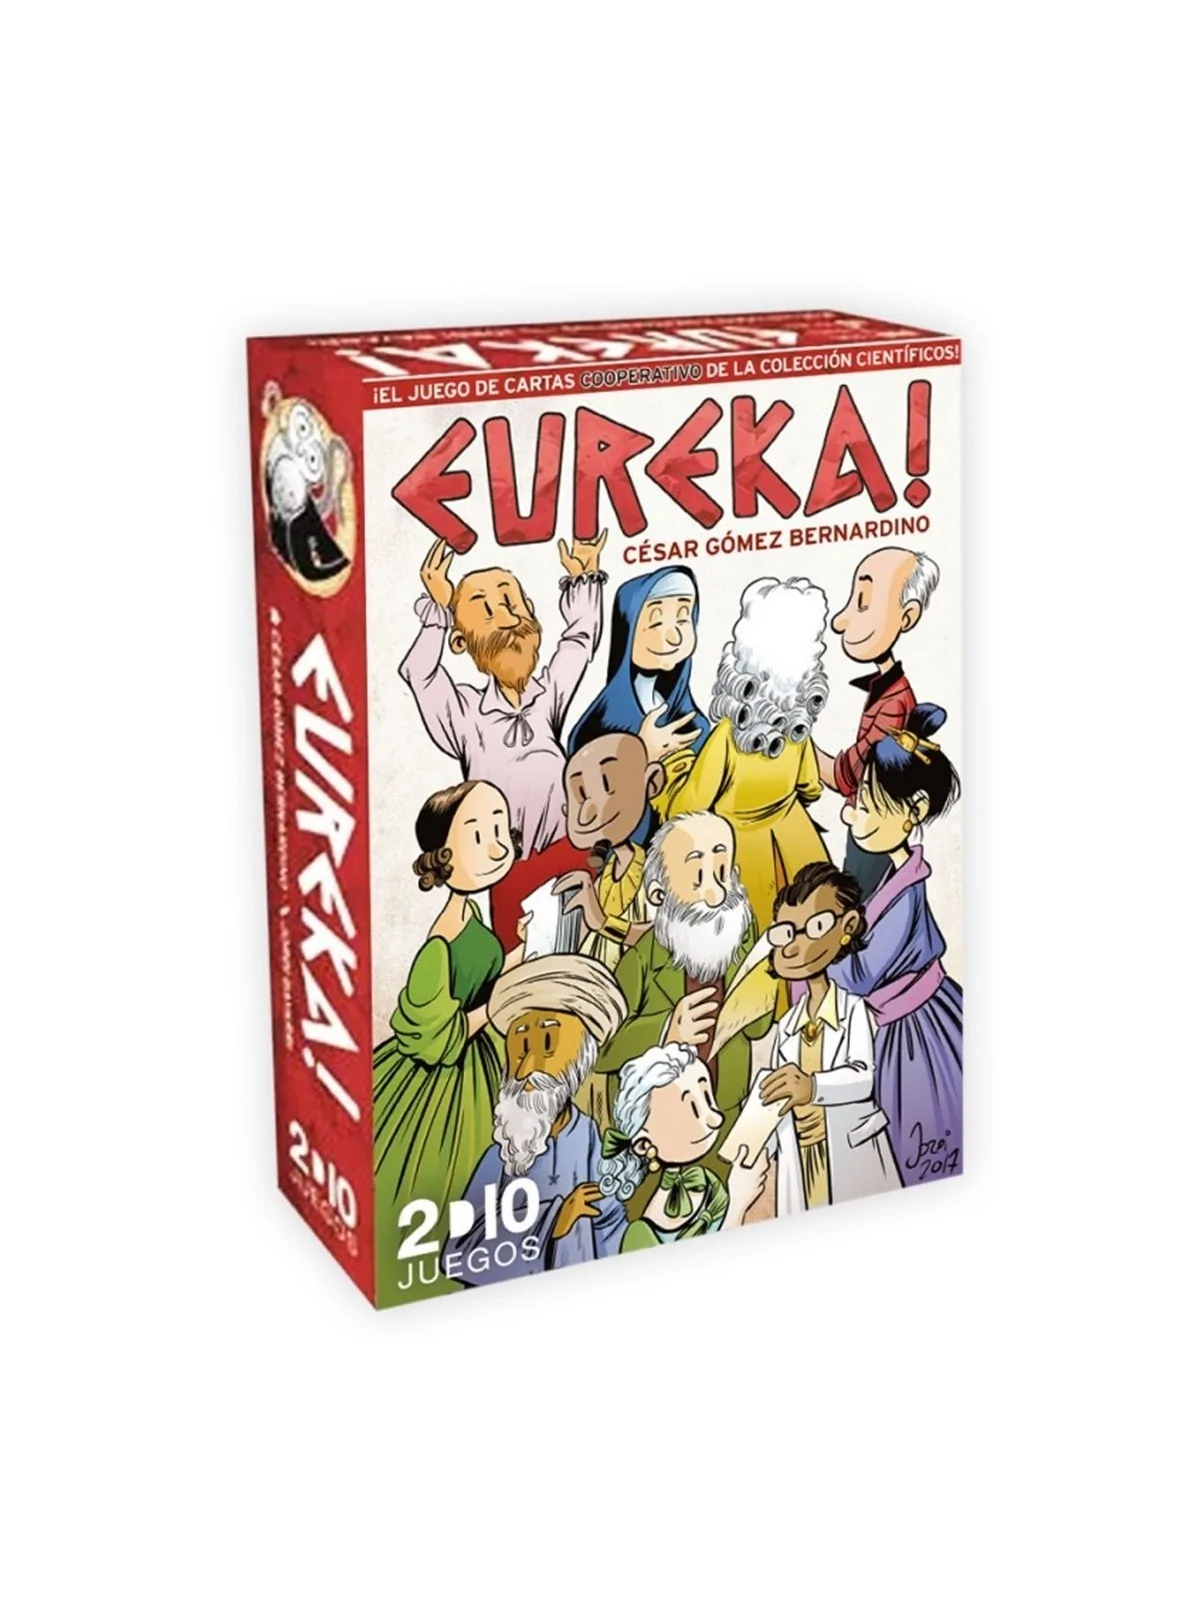 Comprar Eureka barato al mejor precio 13,83 € de Mixin games